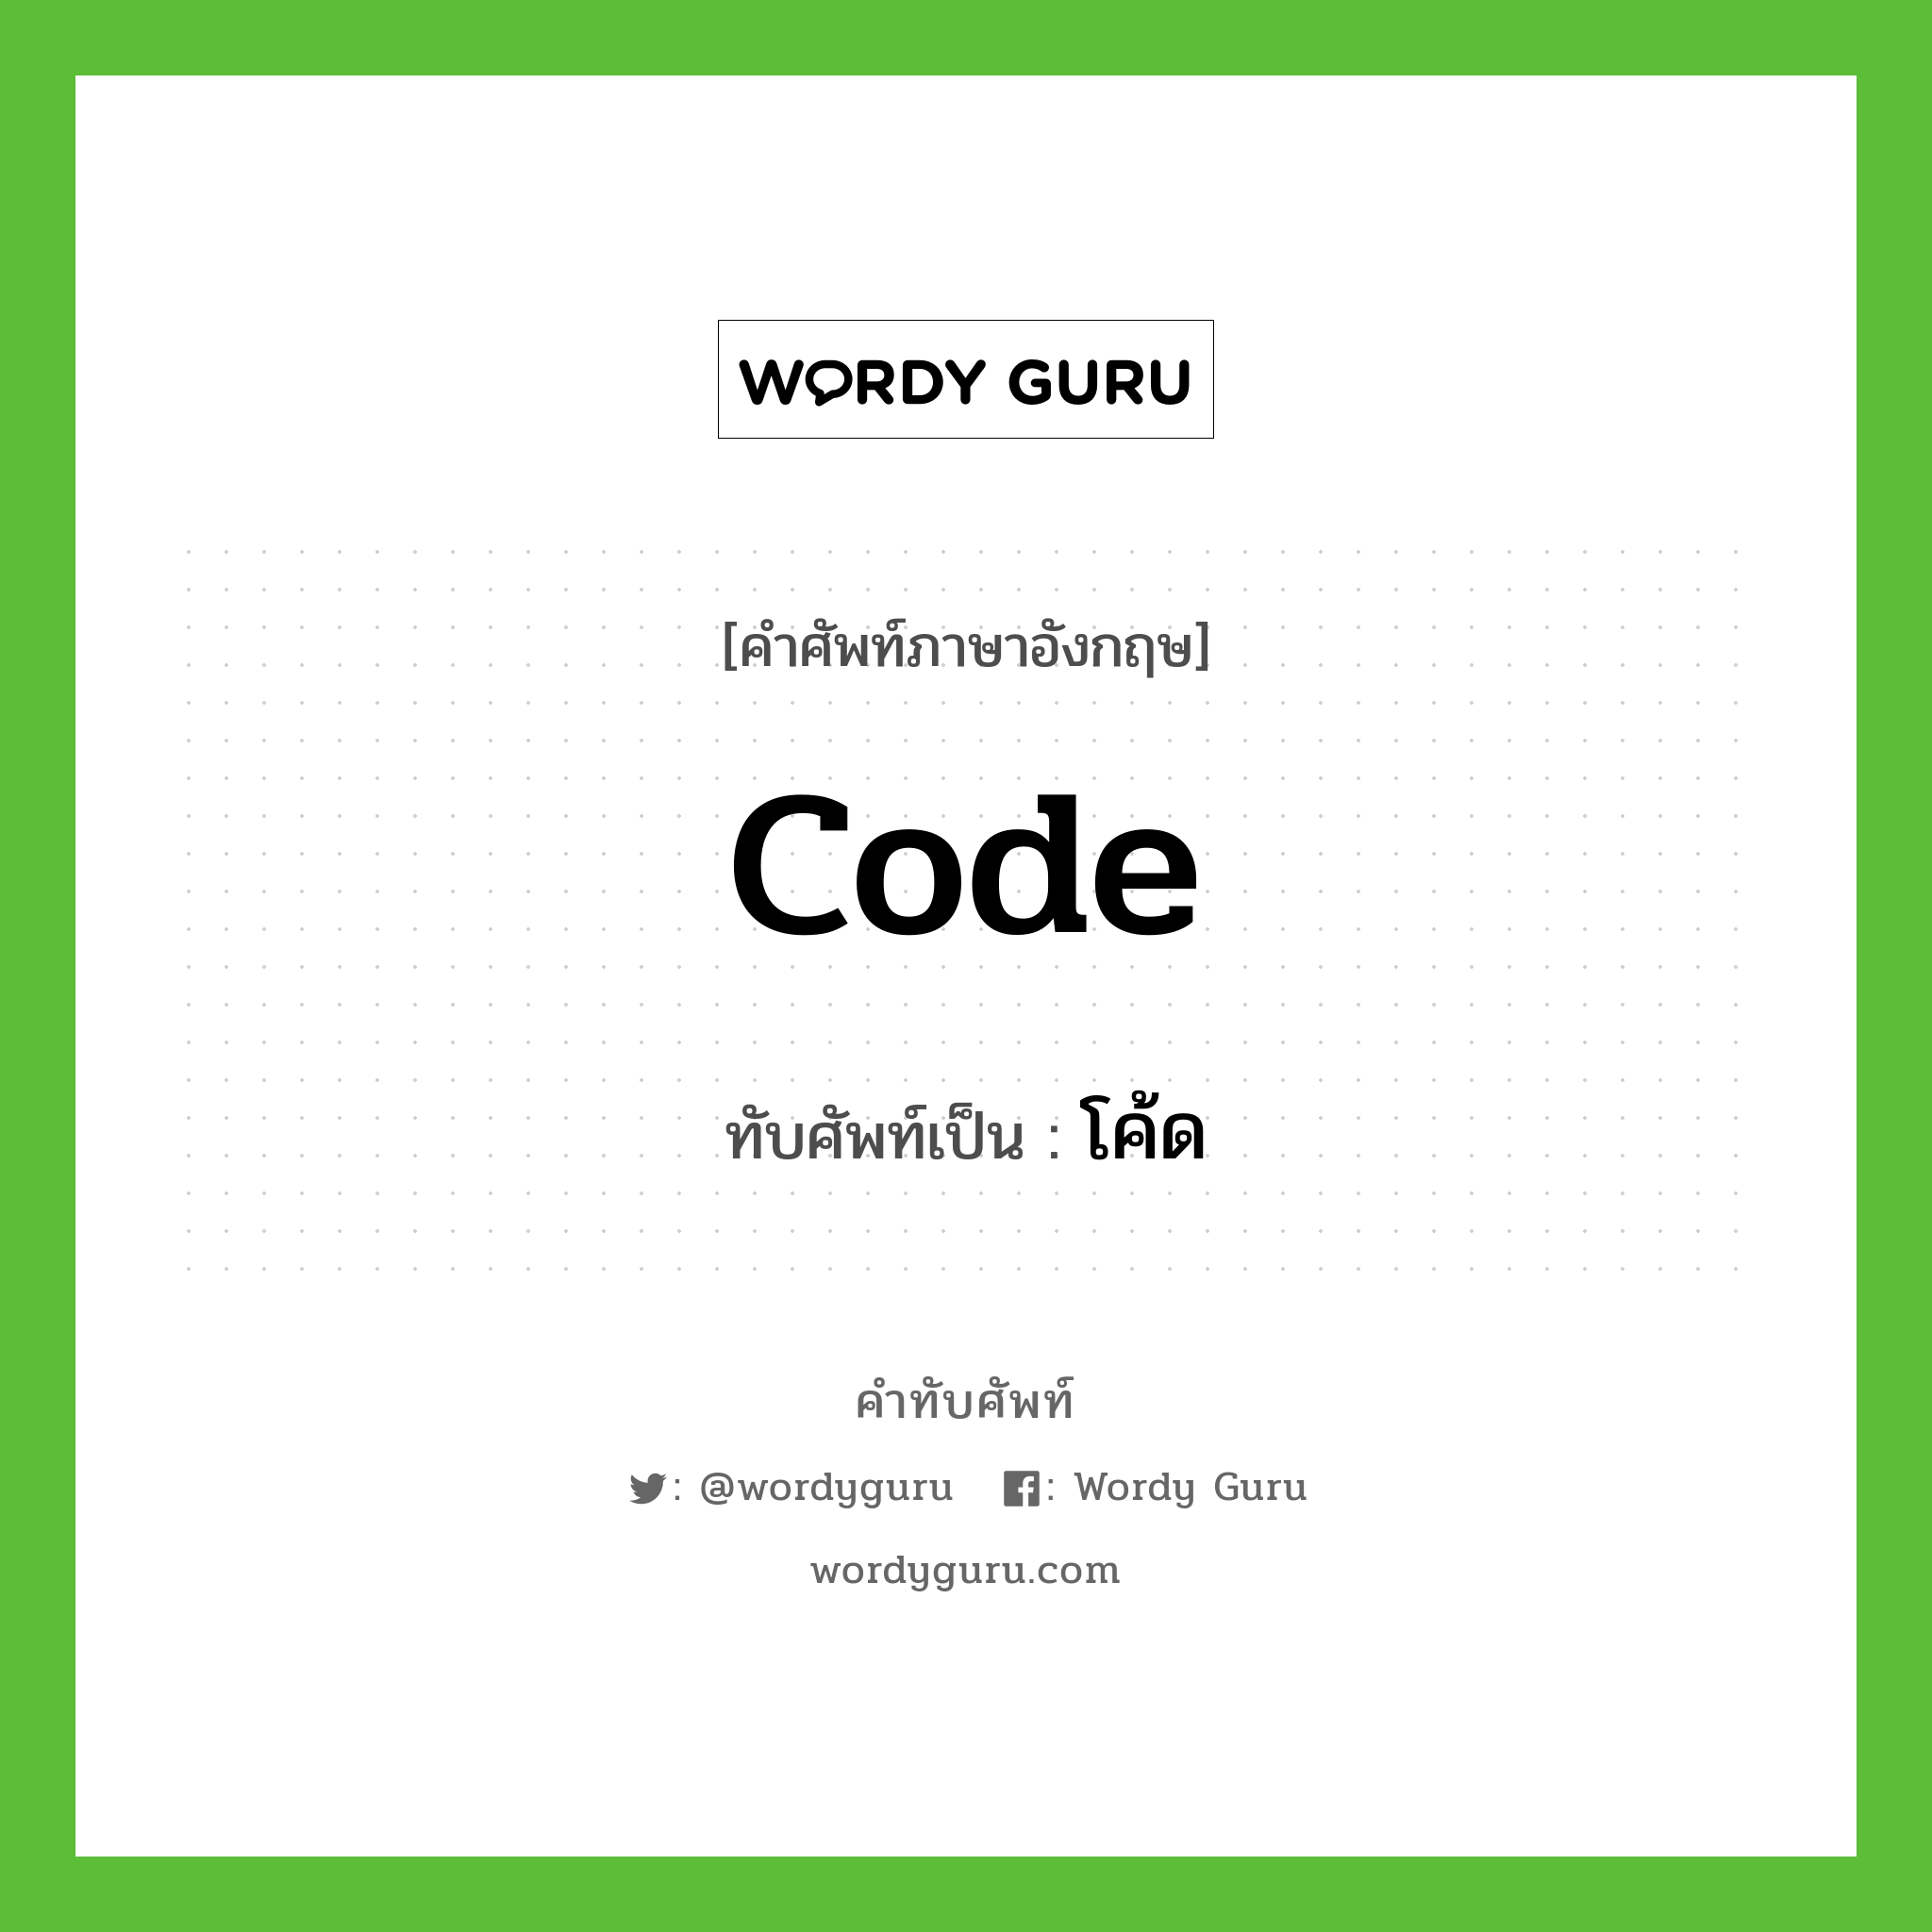 code เขียนเป็นคำไทยว่าอะไร?, คำศัพท์ภาษาอังกฤษ code ทับศัพท์เป็น โค้ด